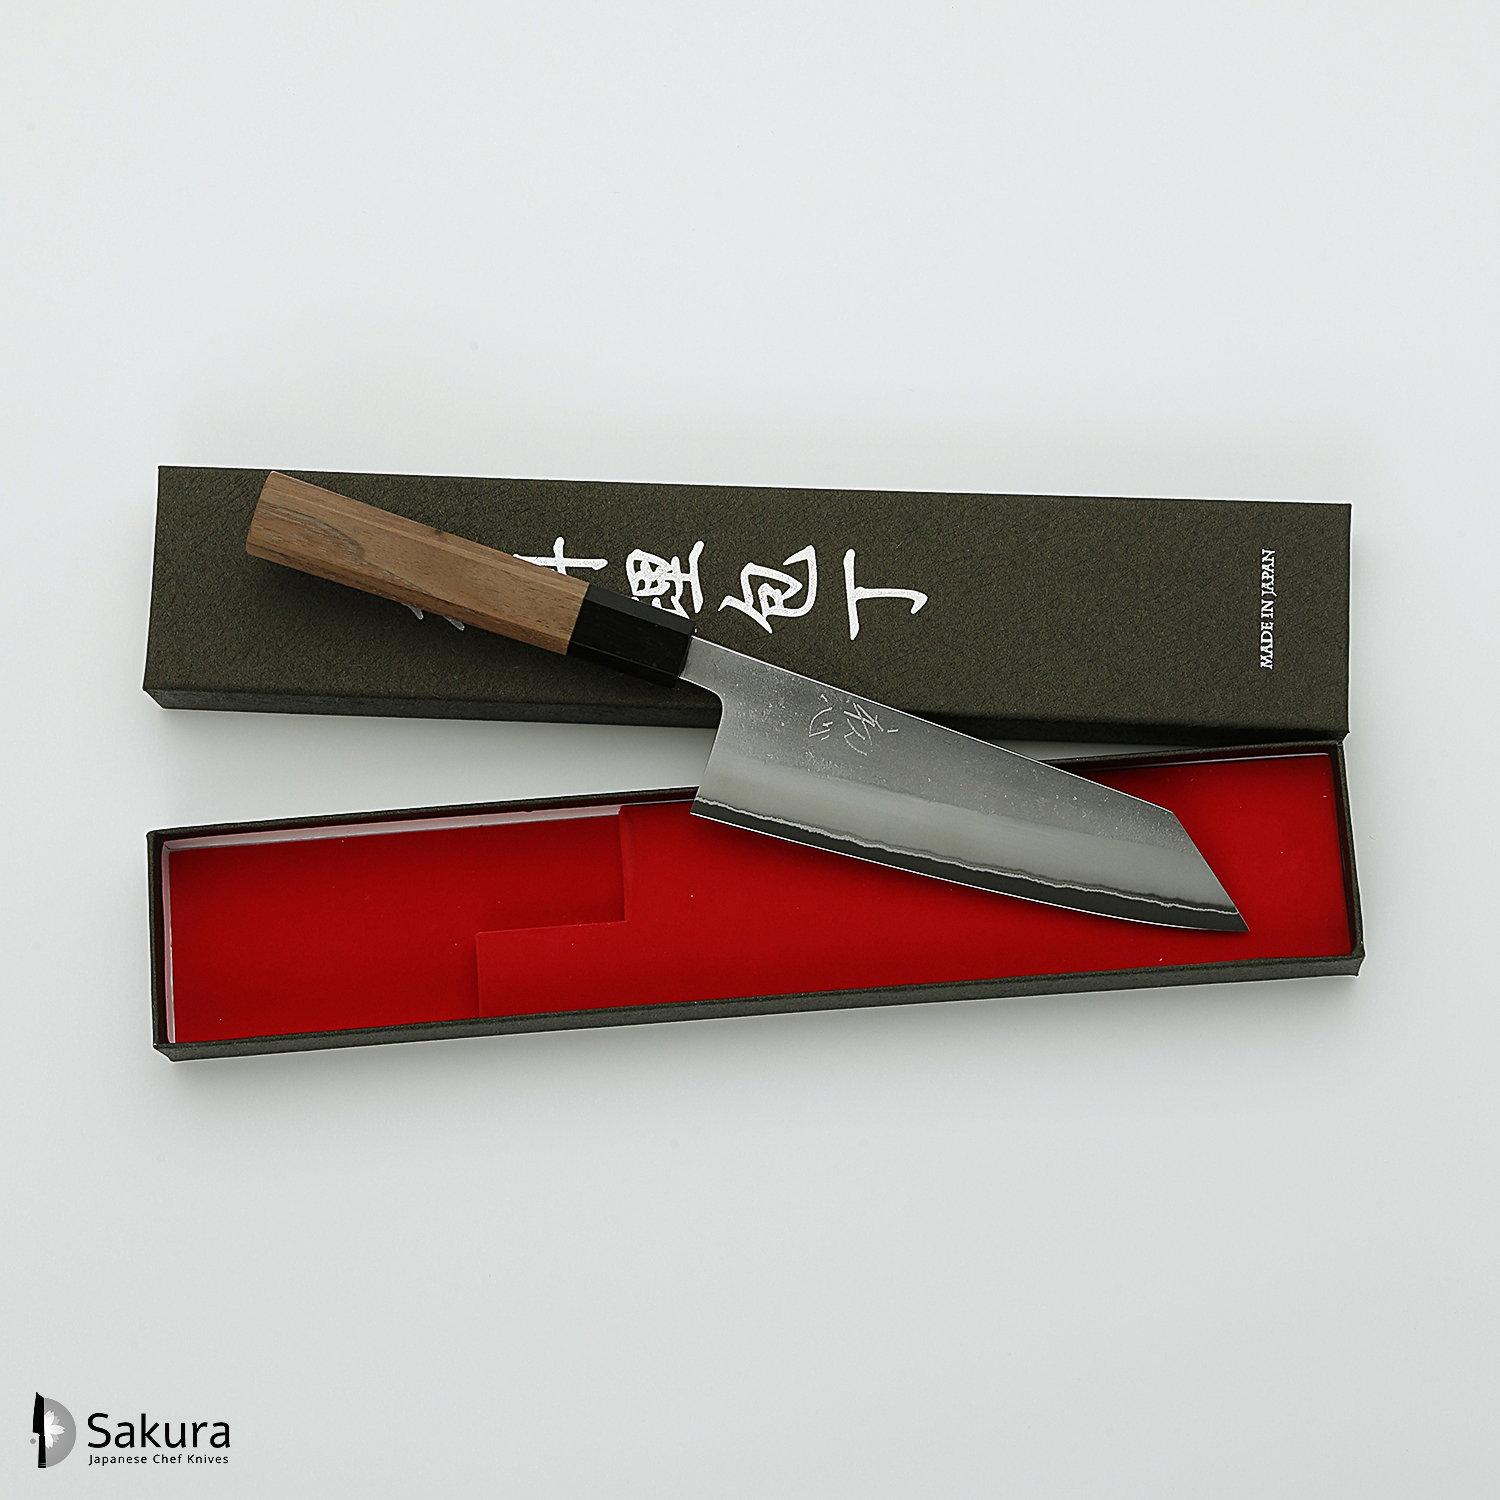 סכין רב-תכליתית בּוּנְקָה 165מ״מ מחושלת בעבודת יד 3 שכבות: פלדת פחמן יפנית מתקדמת מסוג Shirogami #2 עטופה פלדת אל-חלד גימור מט חיספוס טבעי יושיקאנה יפן